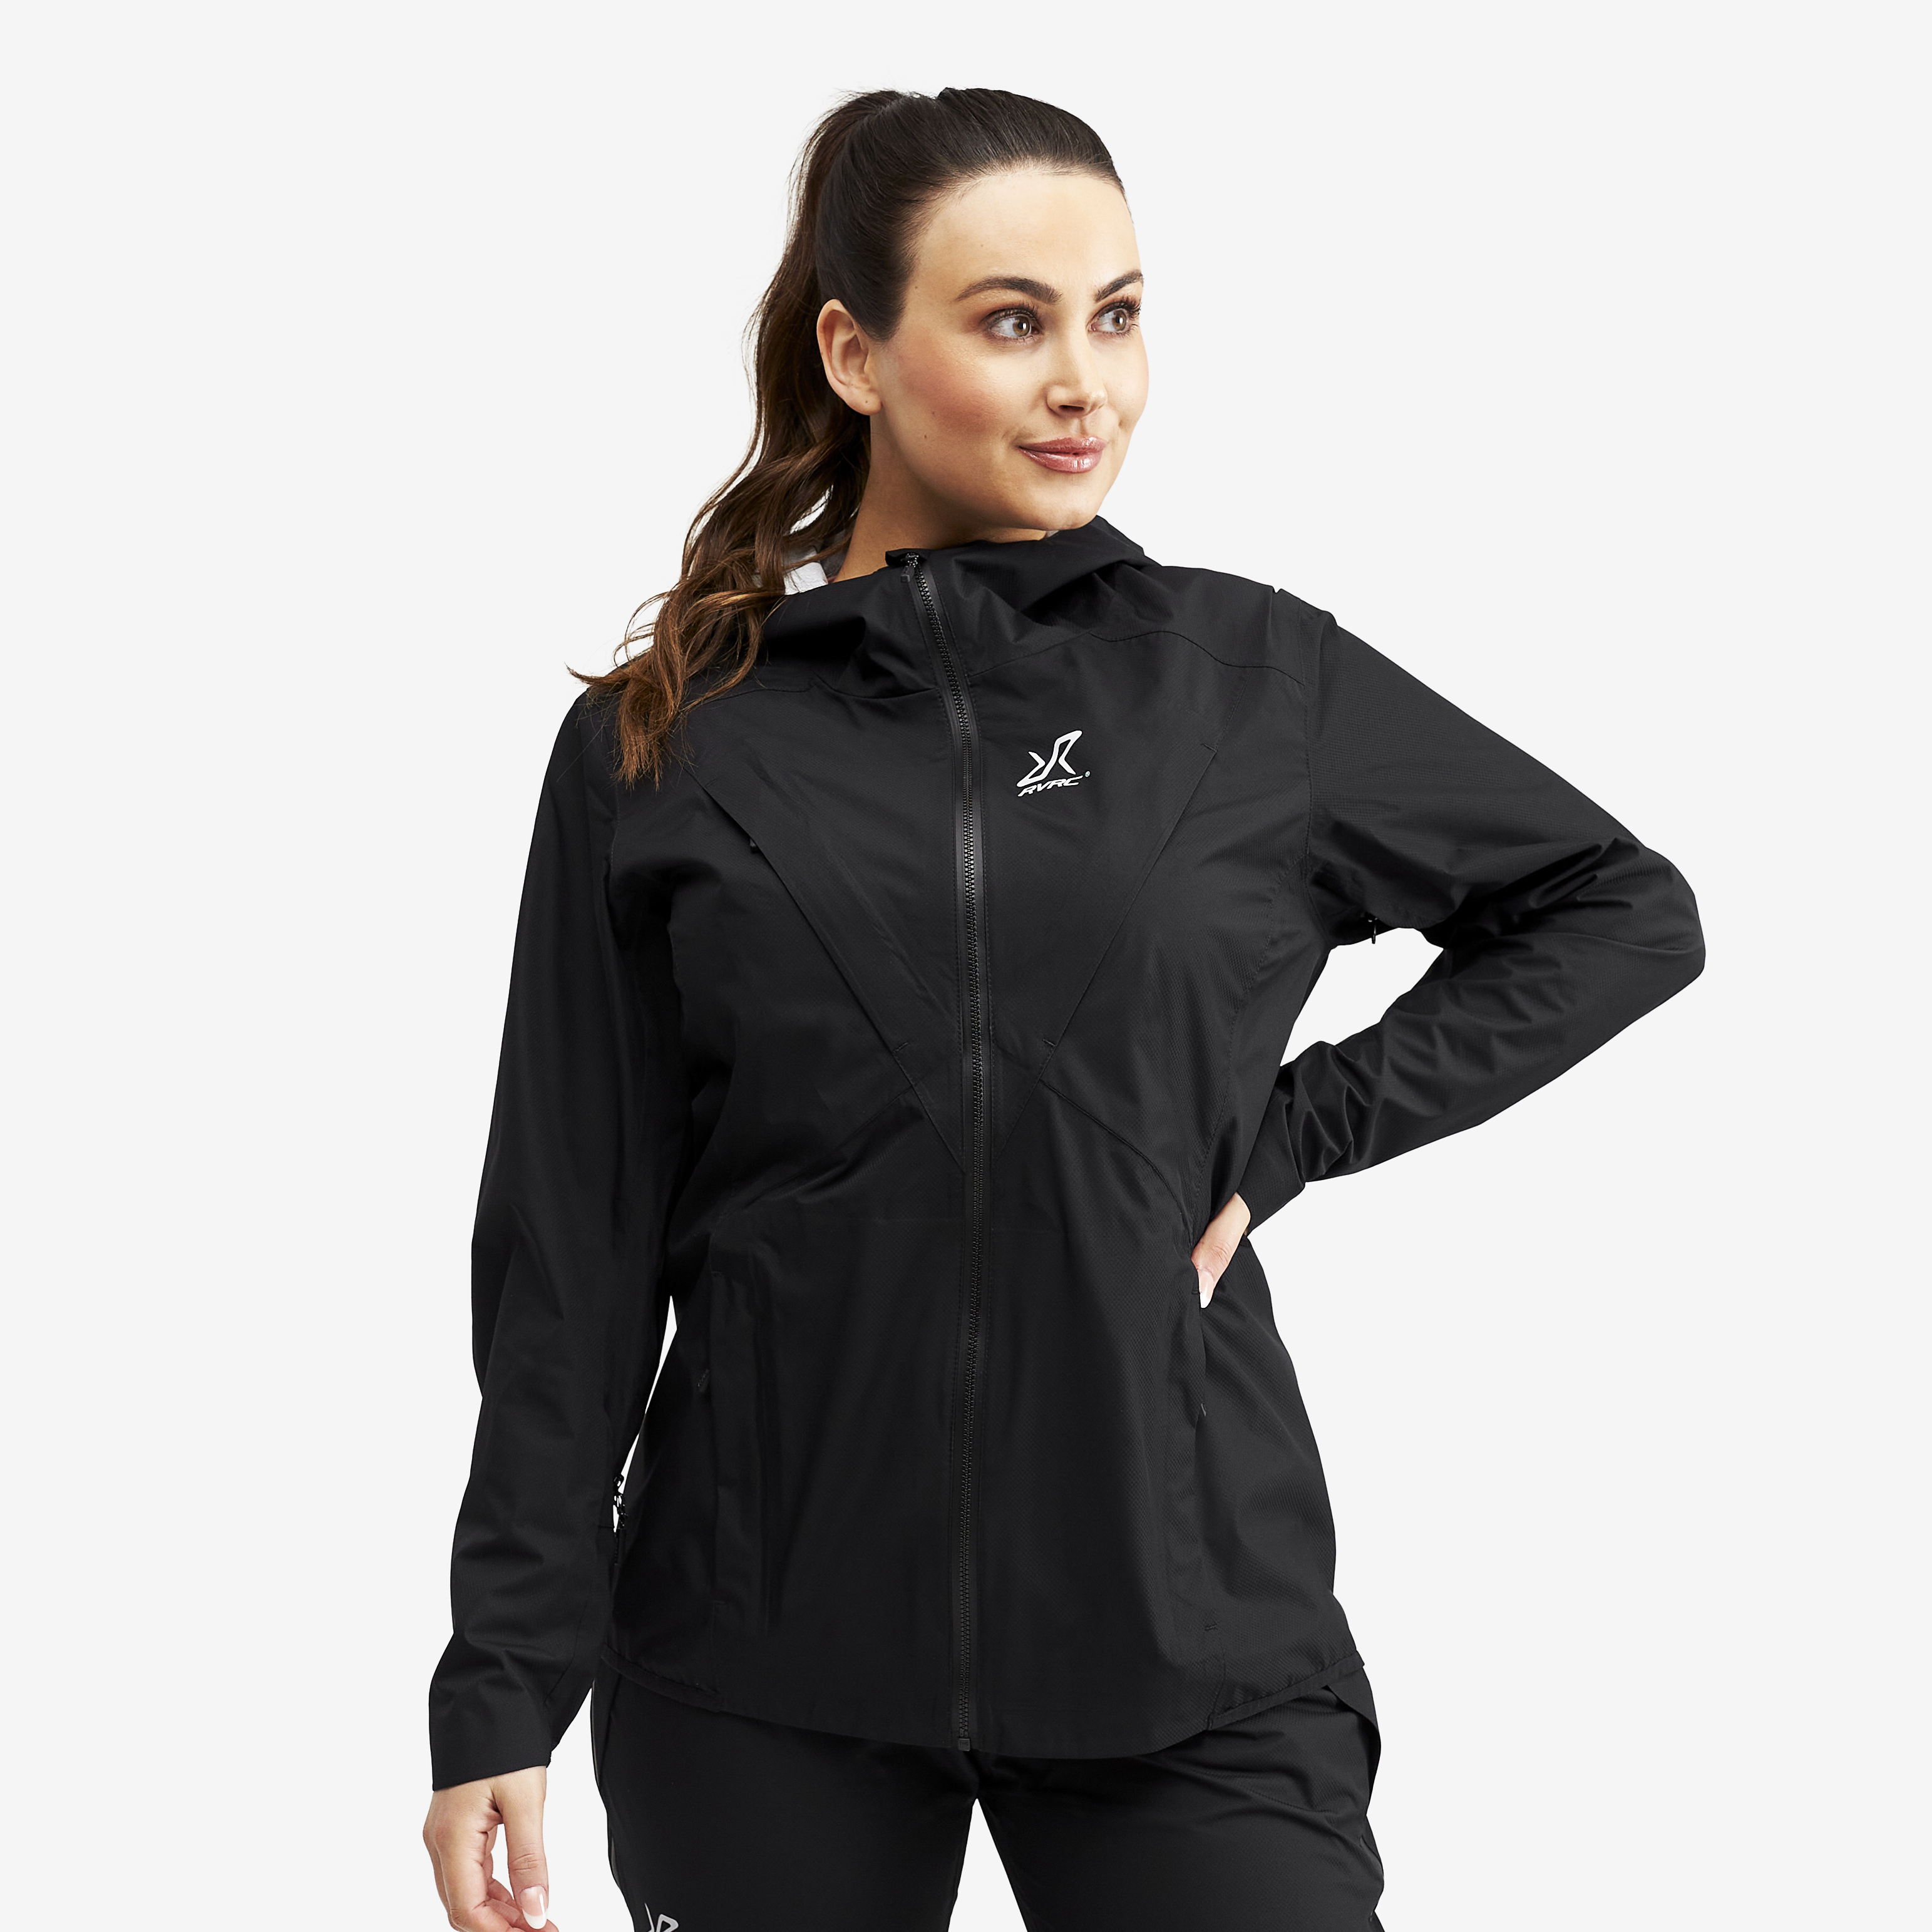 Typhoon waterproof jacket for women in black